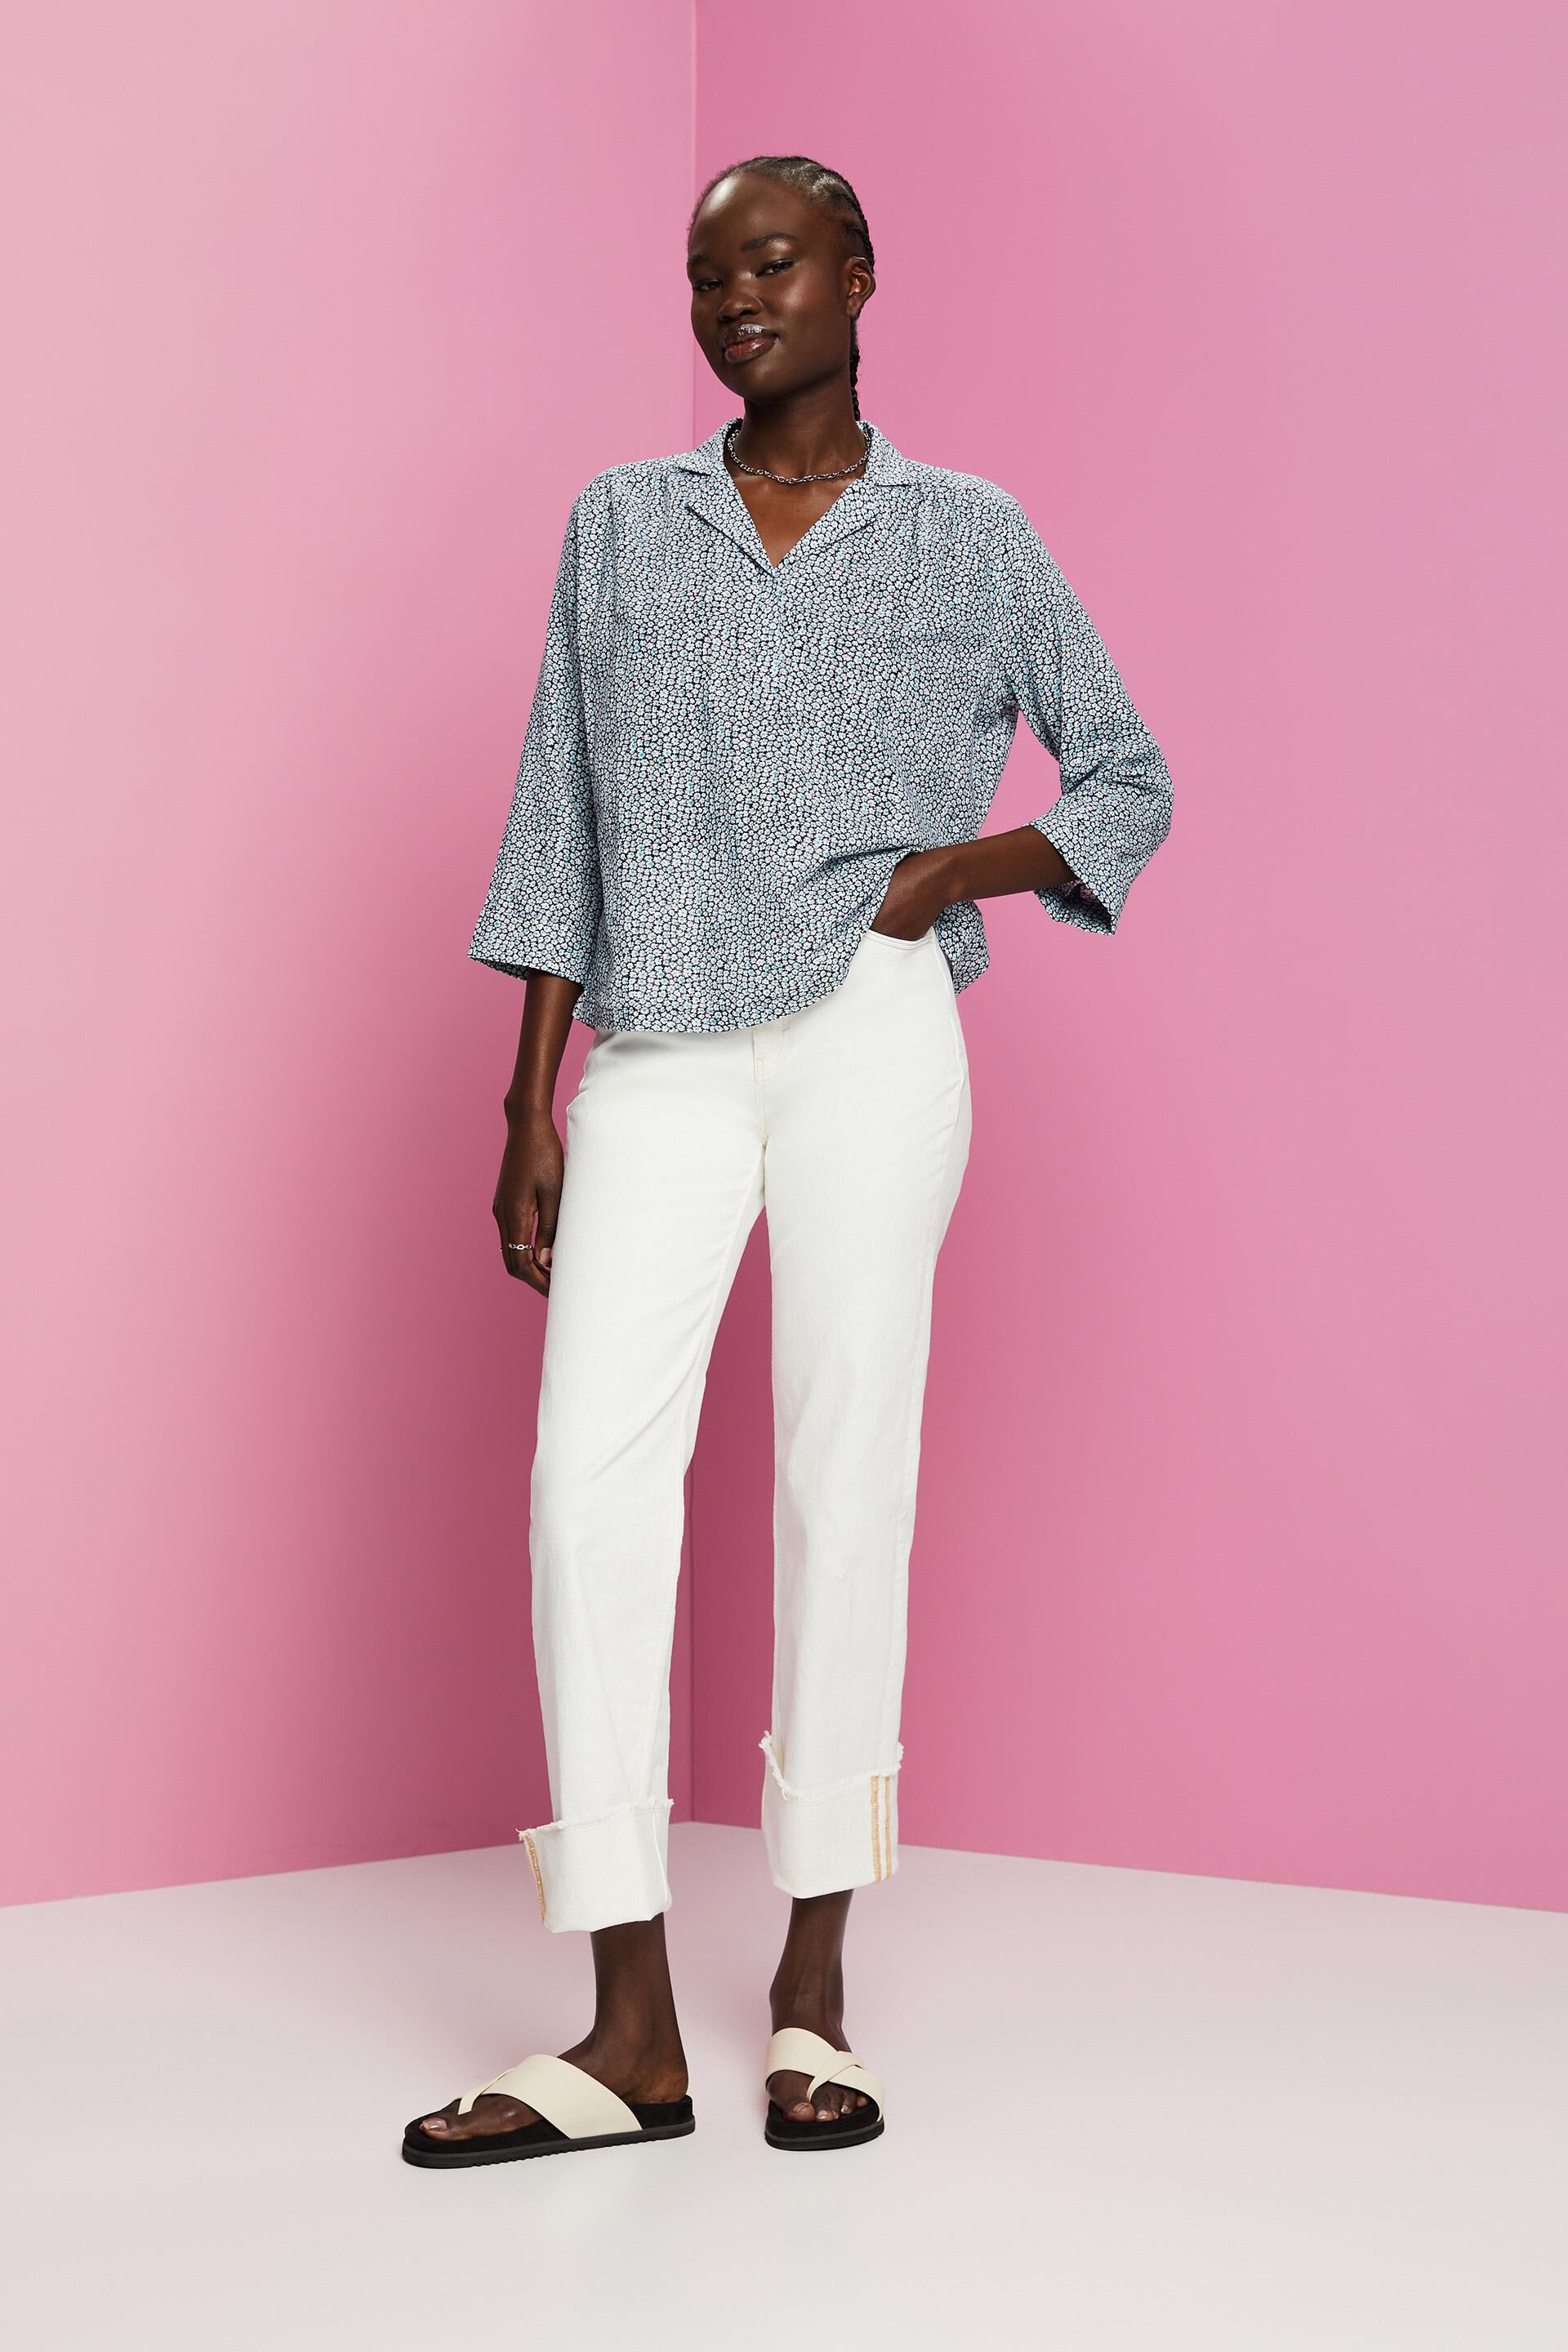 ESPRIT - Cotton blouse with floral print at our online shop